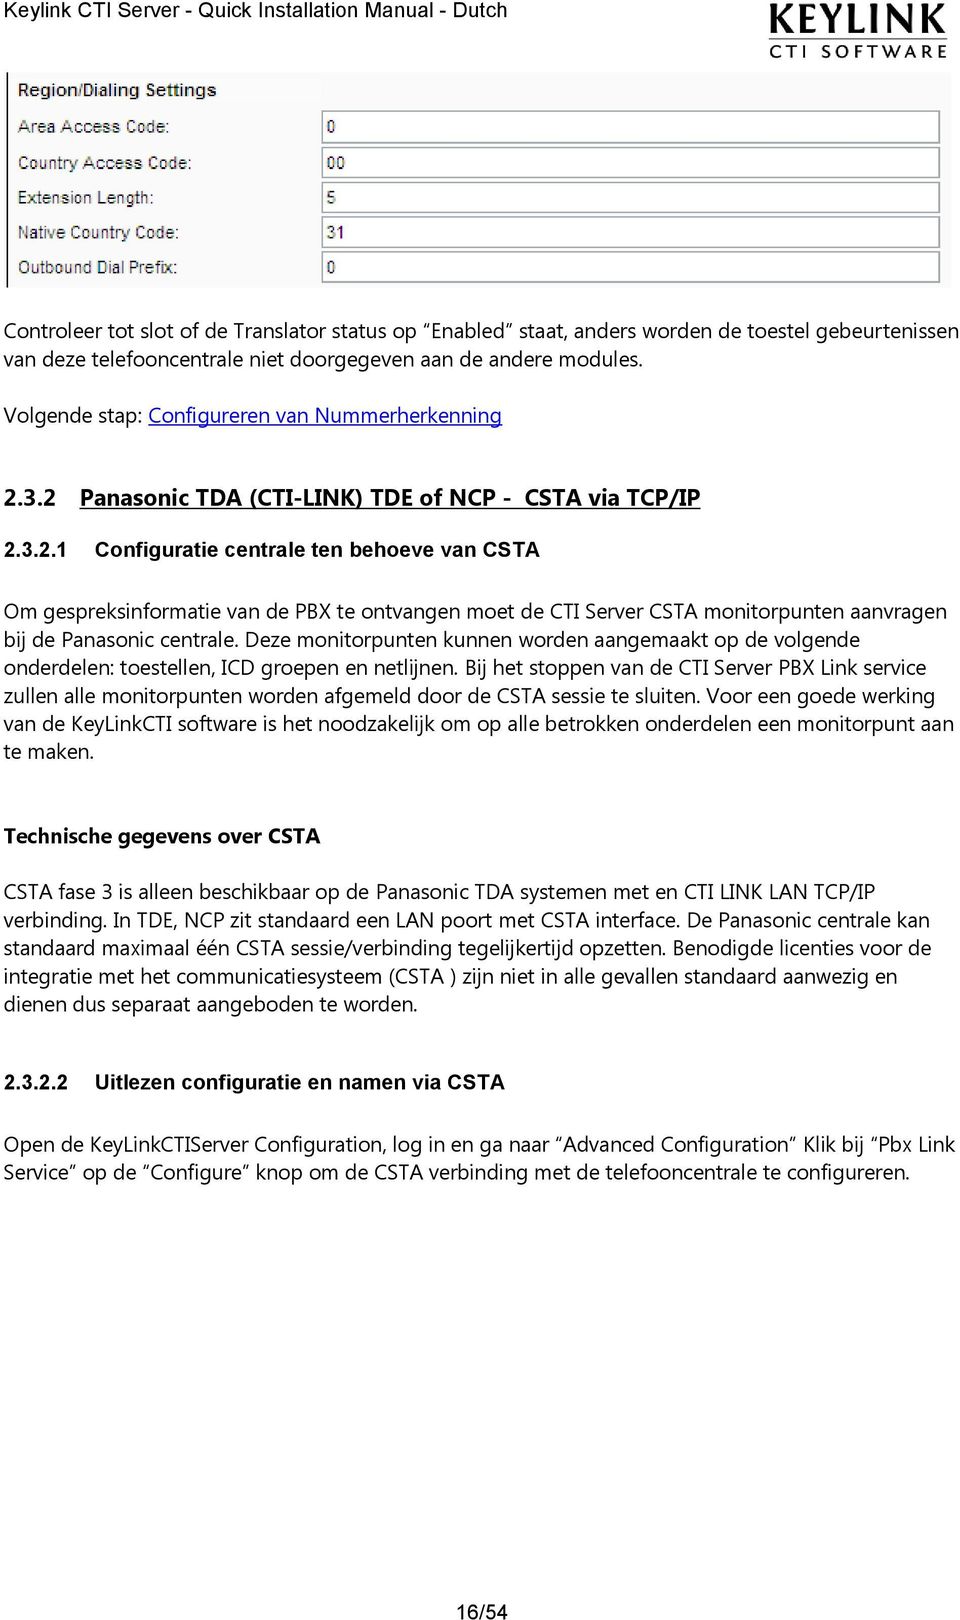 3.2 Panasonic TDA (CTI-LINK) TDE of NCP - CSTA via TCP/IP 2.3.2.1 Configuratie centrale ten behoeve van CSTA Om gespreksinformatie van de PBX te ontvangen moet de CTI Server CSTA monitorpunten aanvragen bij de Panasonic centrale.